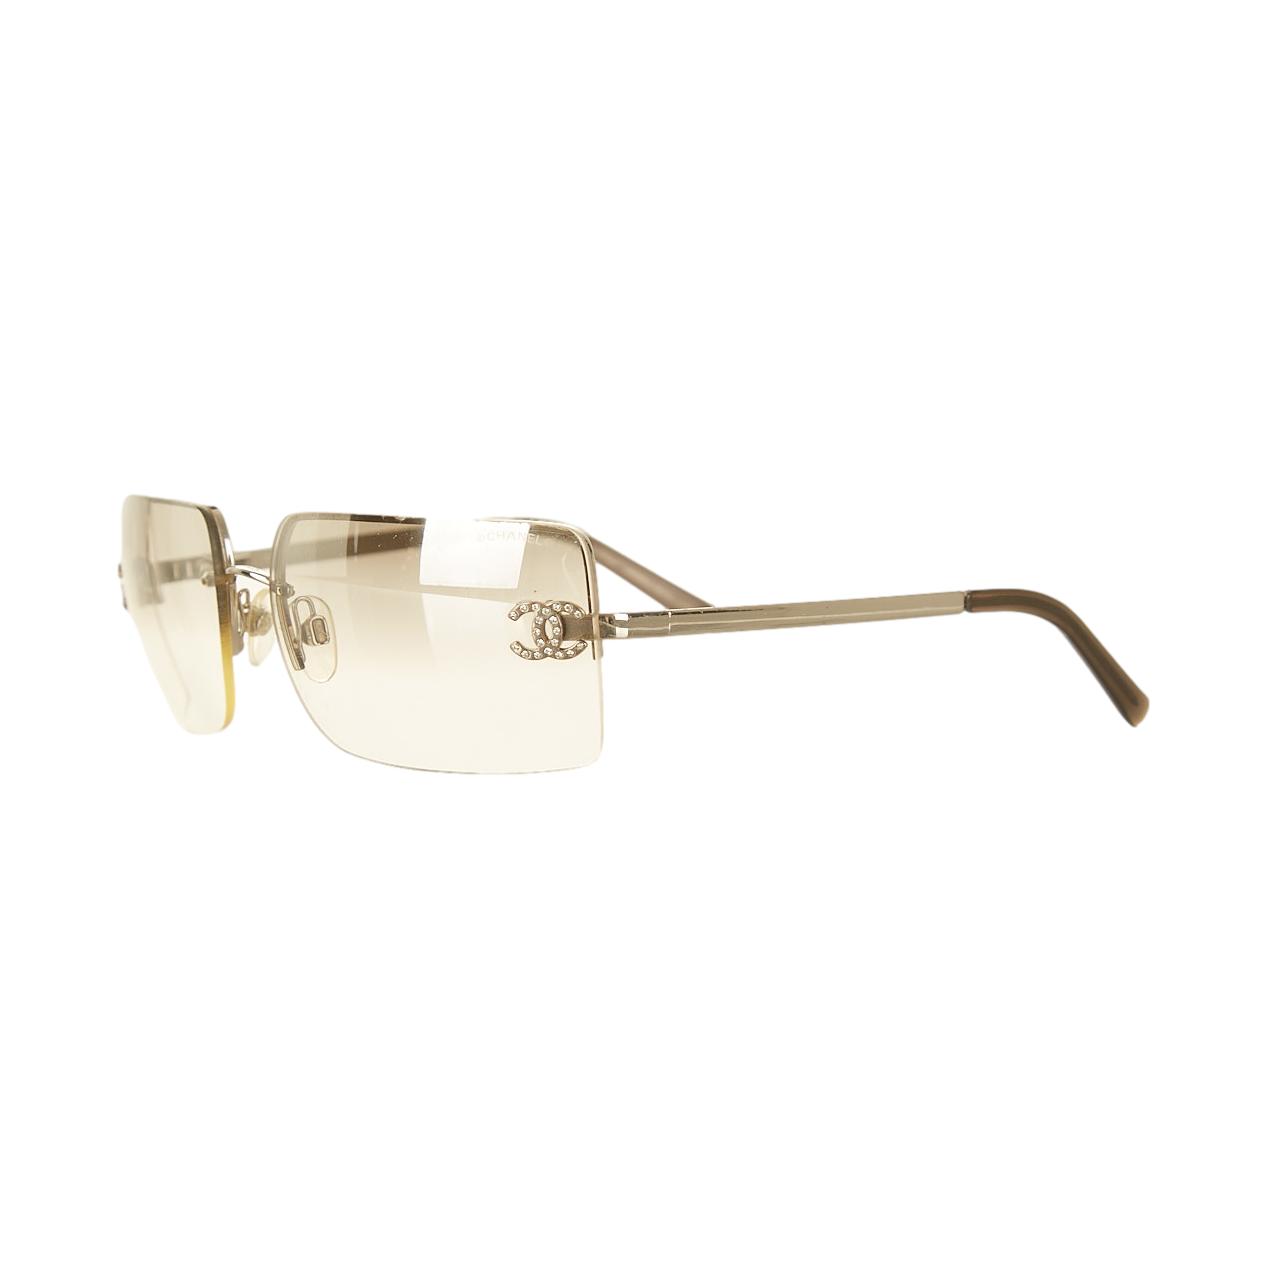 Chanel Silver Rhinestone Rimless Sunglasses